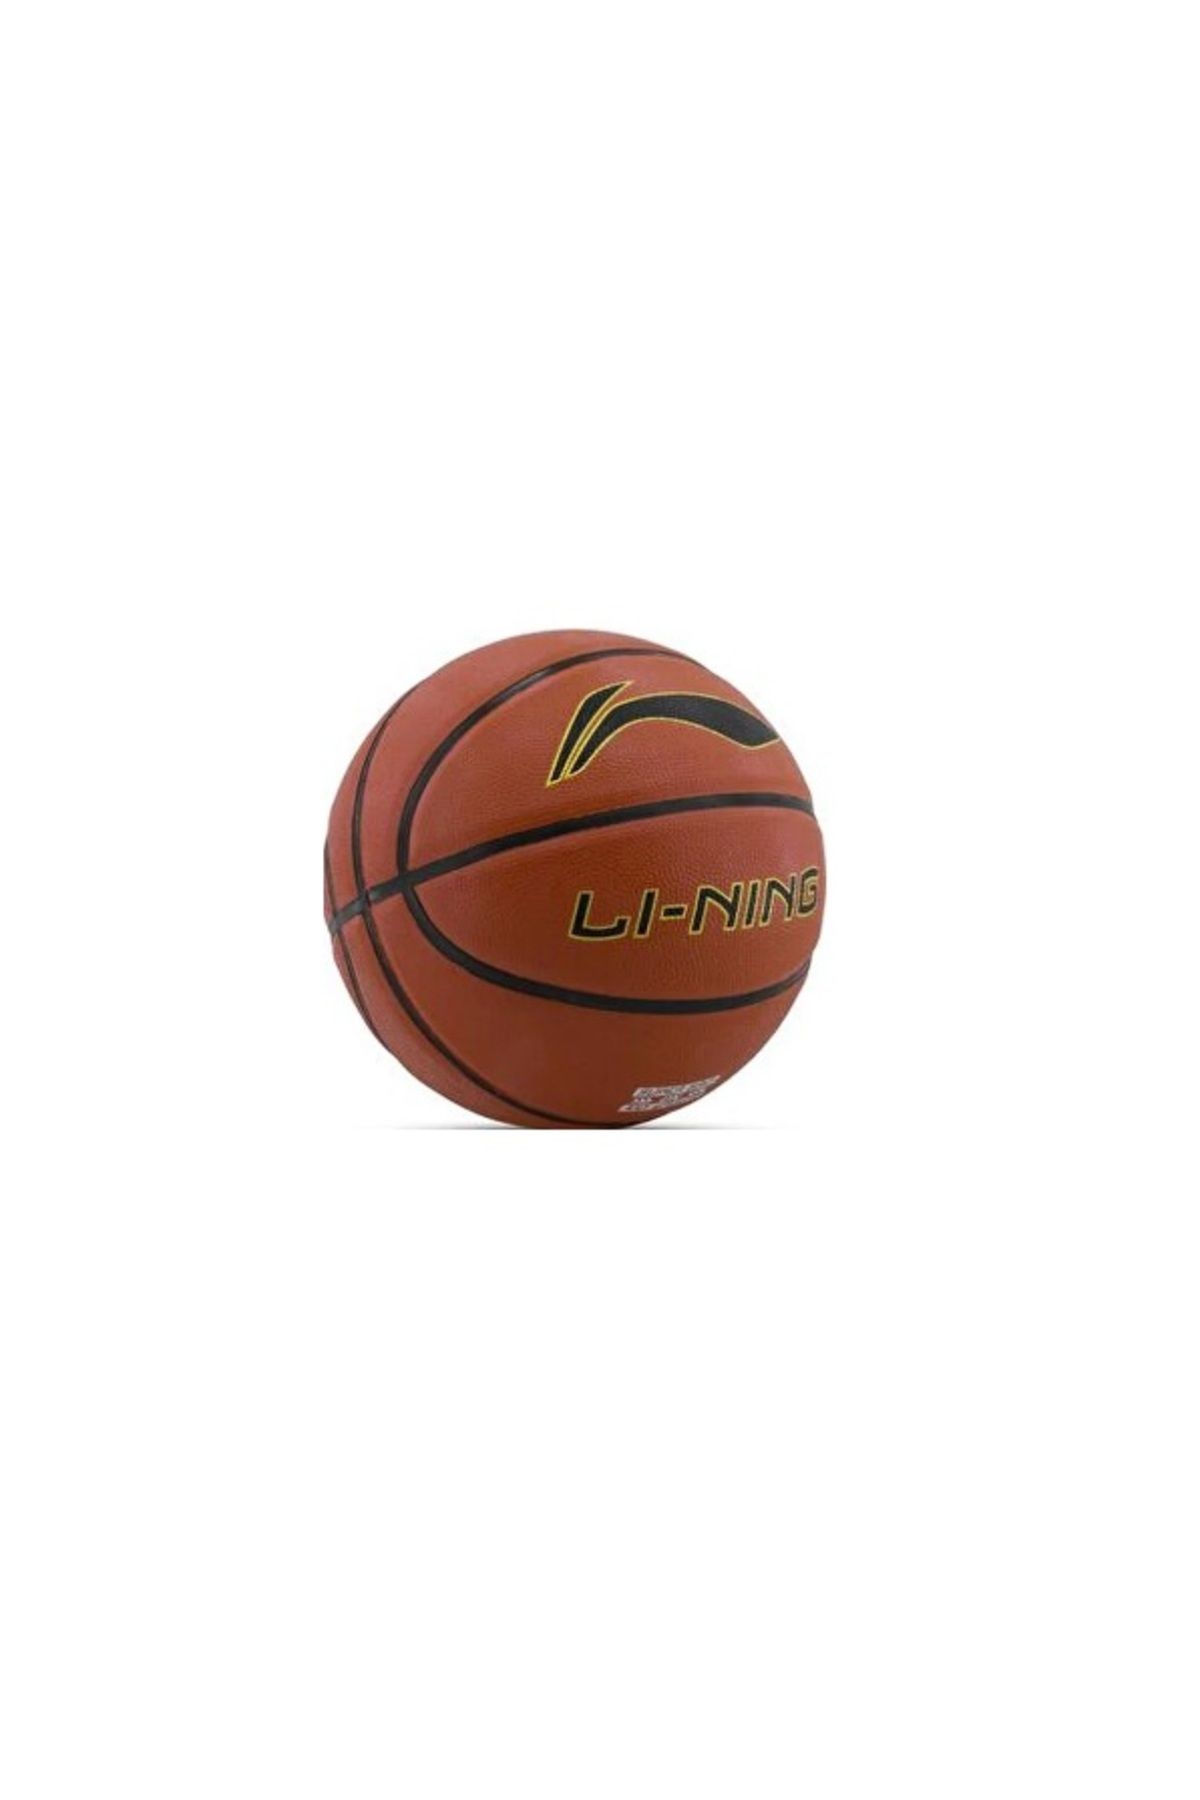 Vertex Li Ning Basketbol Topu Siyah Turuncu h1000